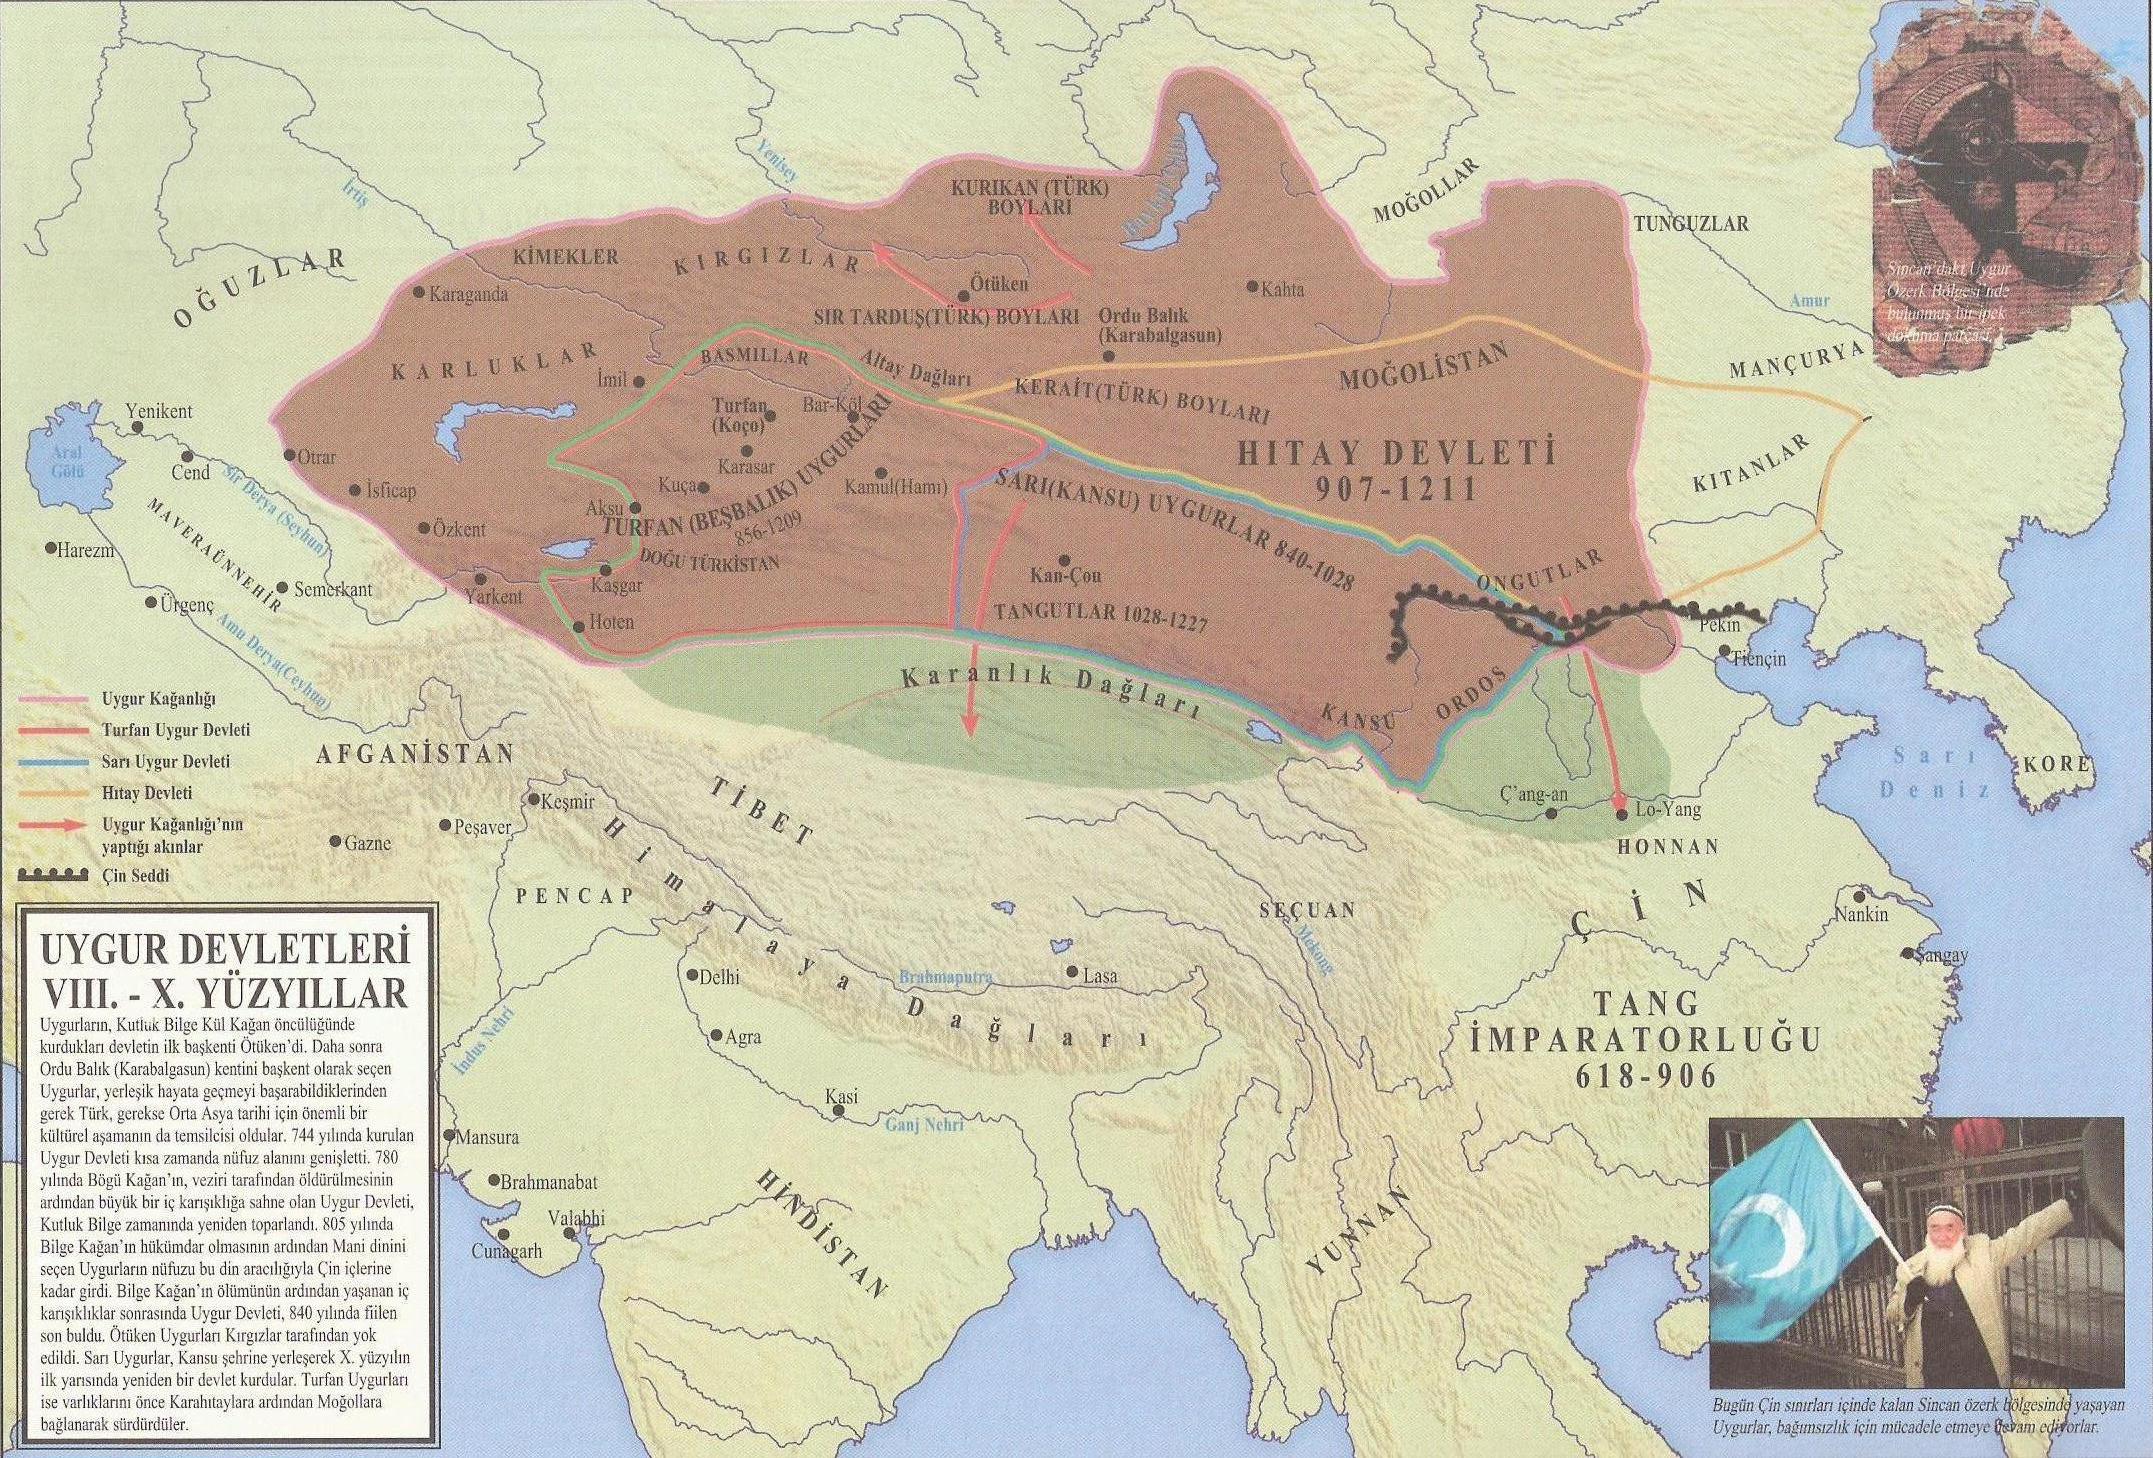 25.uygur devletleri VIII.-X. yüzyıllar.jpg